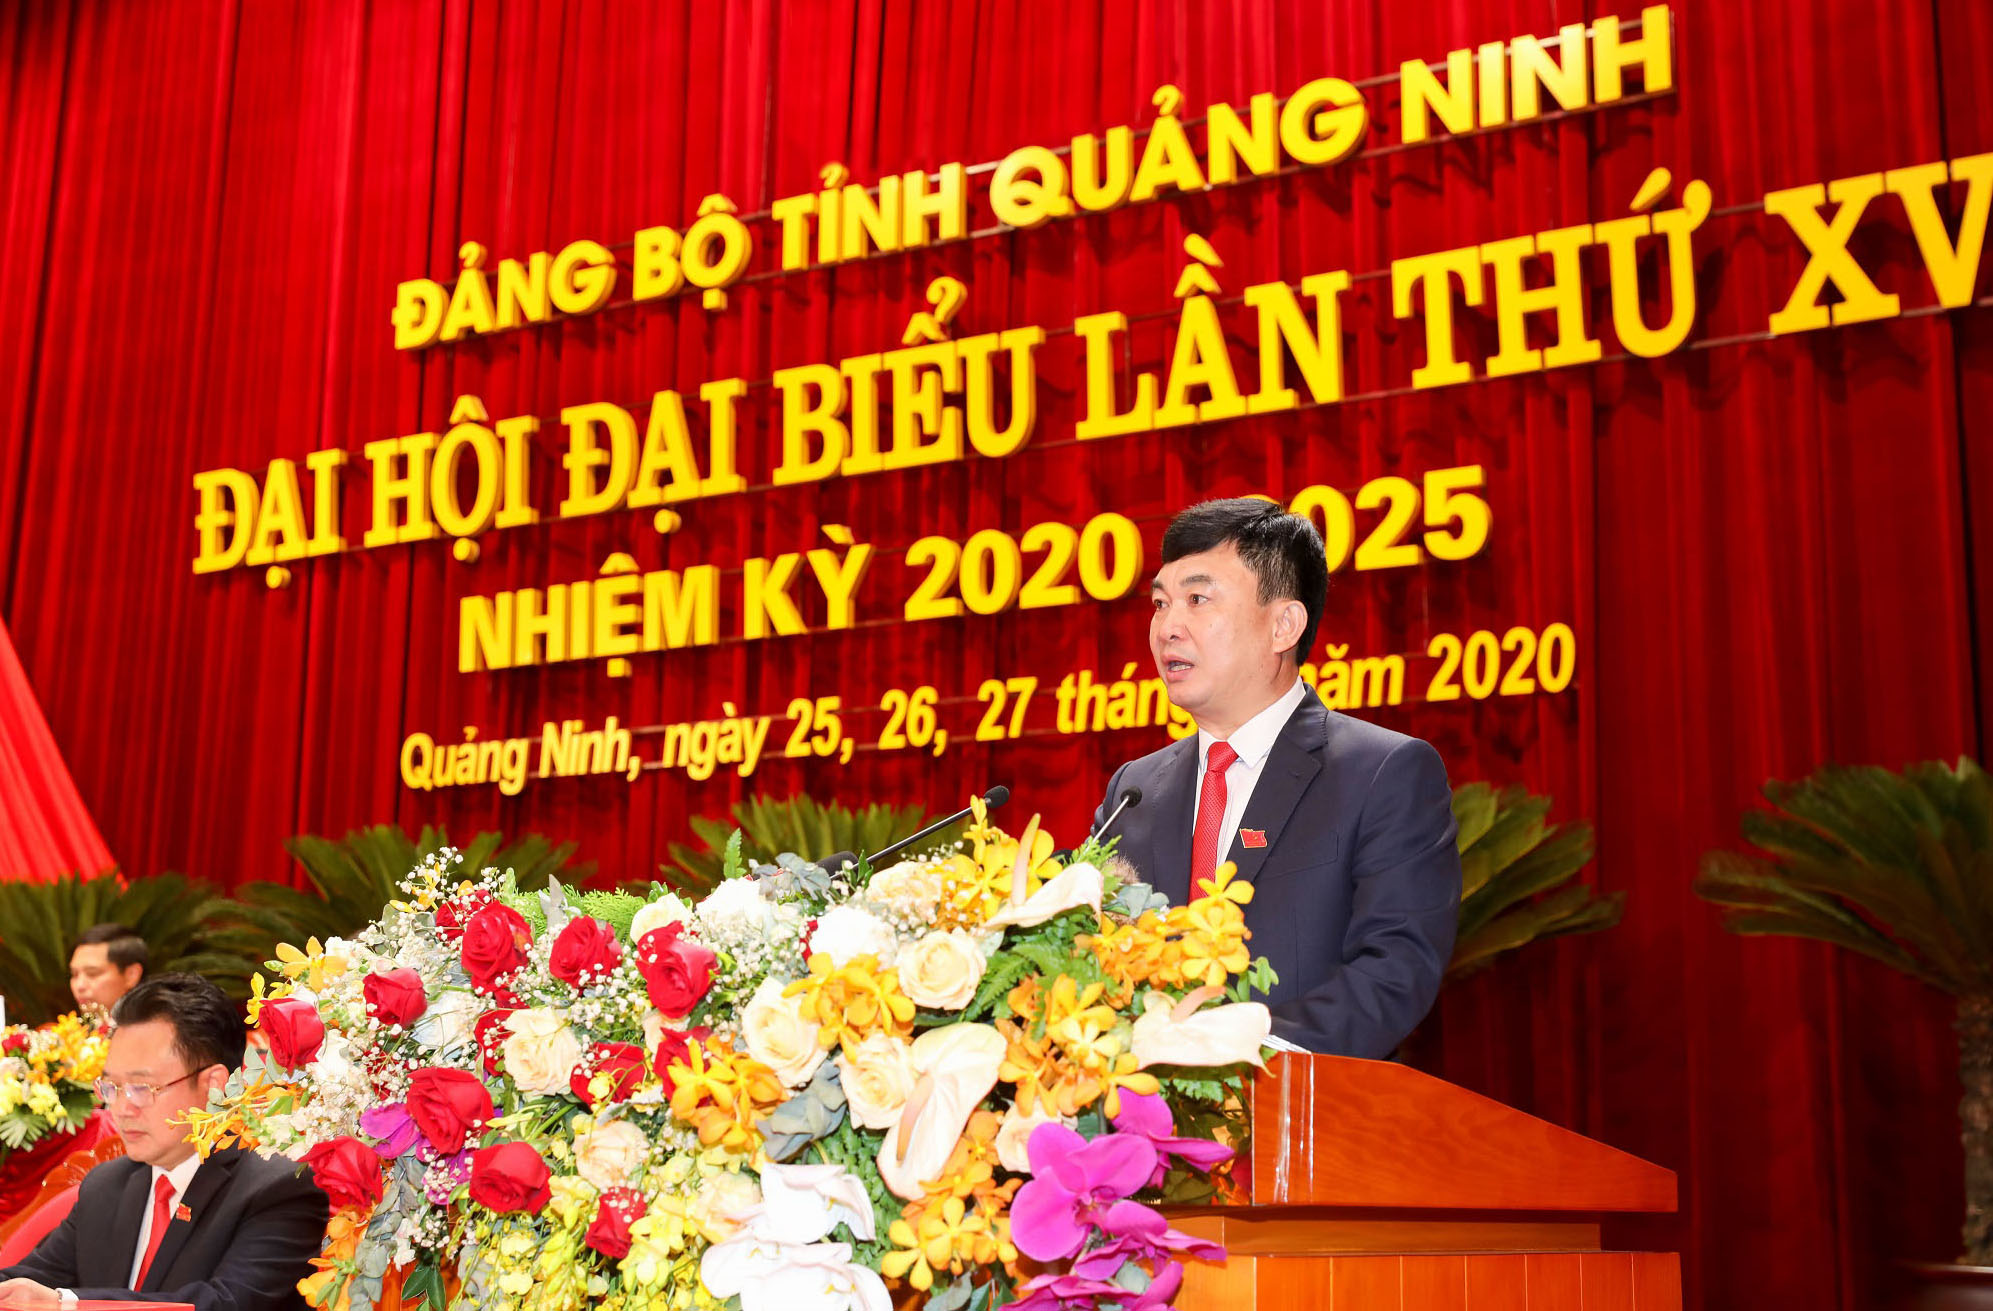 Đồng chí Ngô Hoàng Ngân, Phó Bí thư Thường trực Tỉnh ủy khoá XIV, trình bày dự thảo Báo cáo kiểm điểm sự lãnh đạo, chỉ đạo của Ban Chấp hành Đảng bộ tỉnh khóa XIV, nhiệm kỳ 2015-2020.